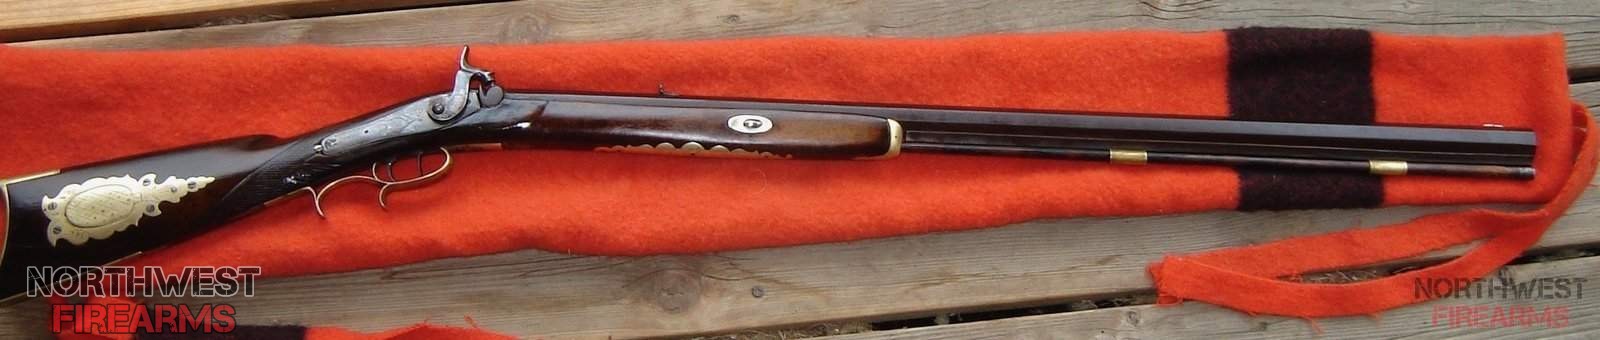 1850's St. Louis plains rifle